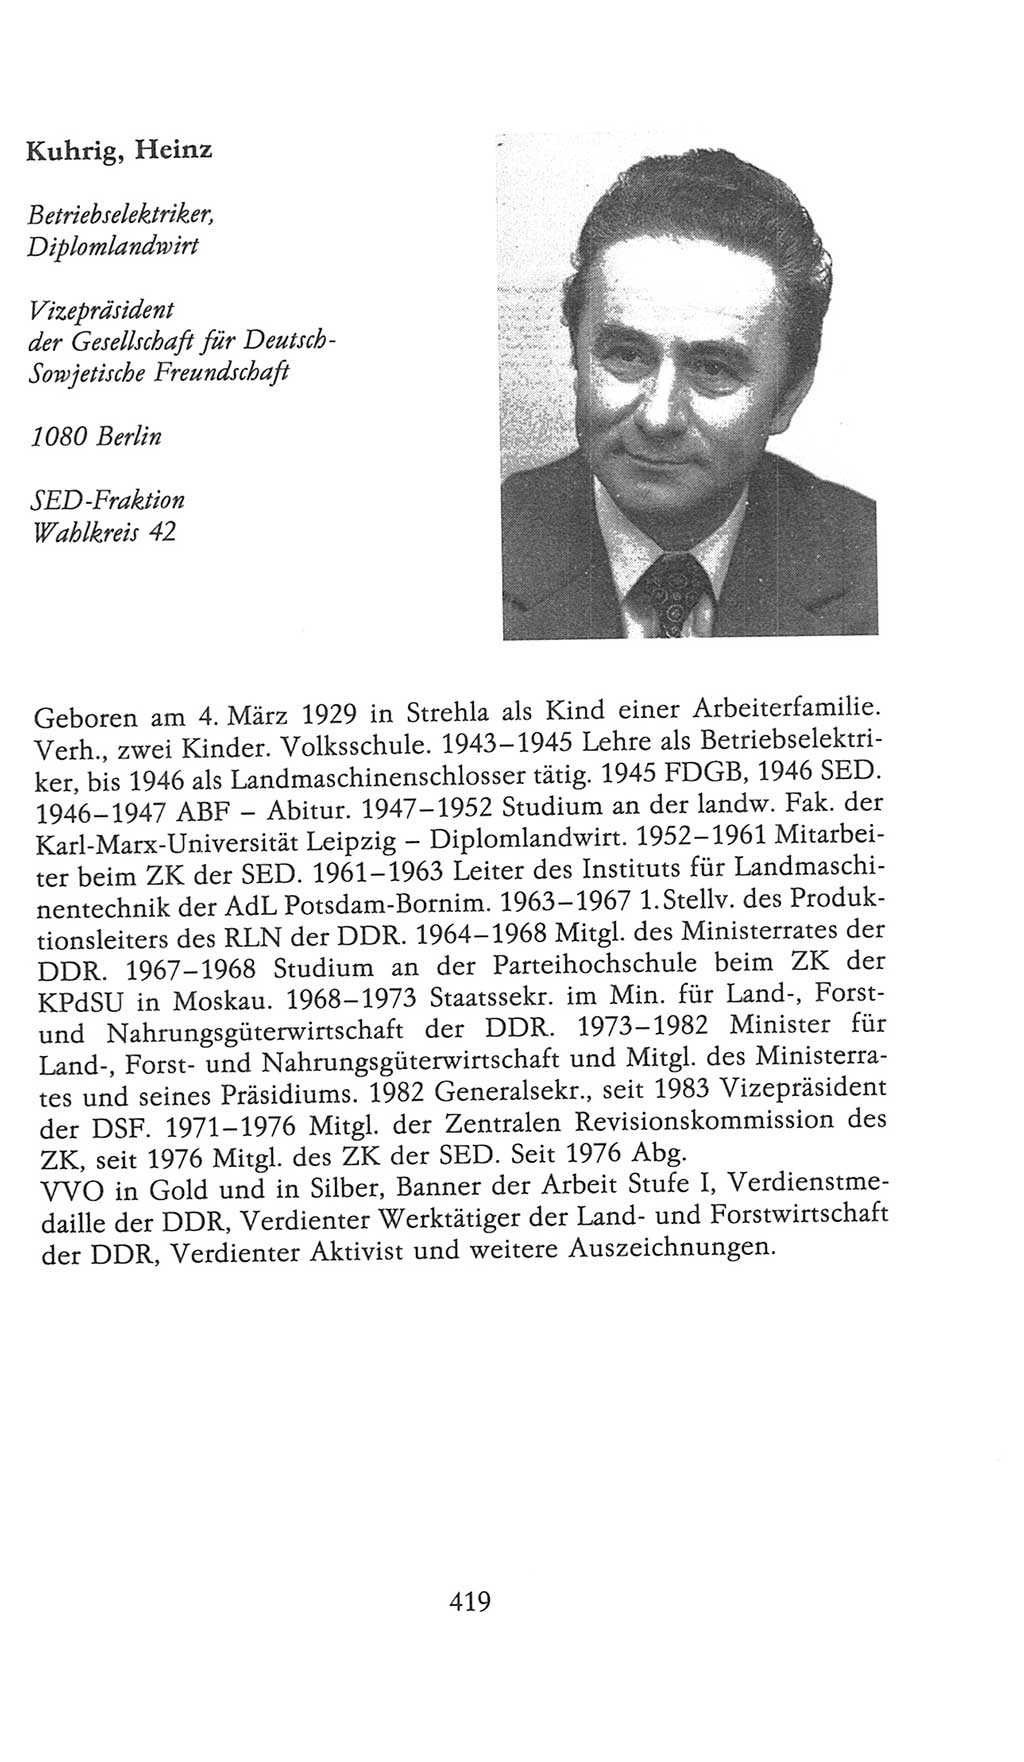 Volkskammer (VK) der Deutschen Demokratischen Republik (DDR), 9. Wahlperiode 1986-1990, Seite 419 (VK. DDR 9. WP. 1986-1990, S. 419)